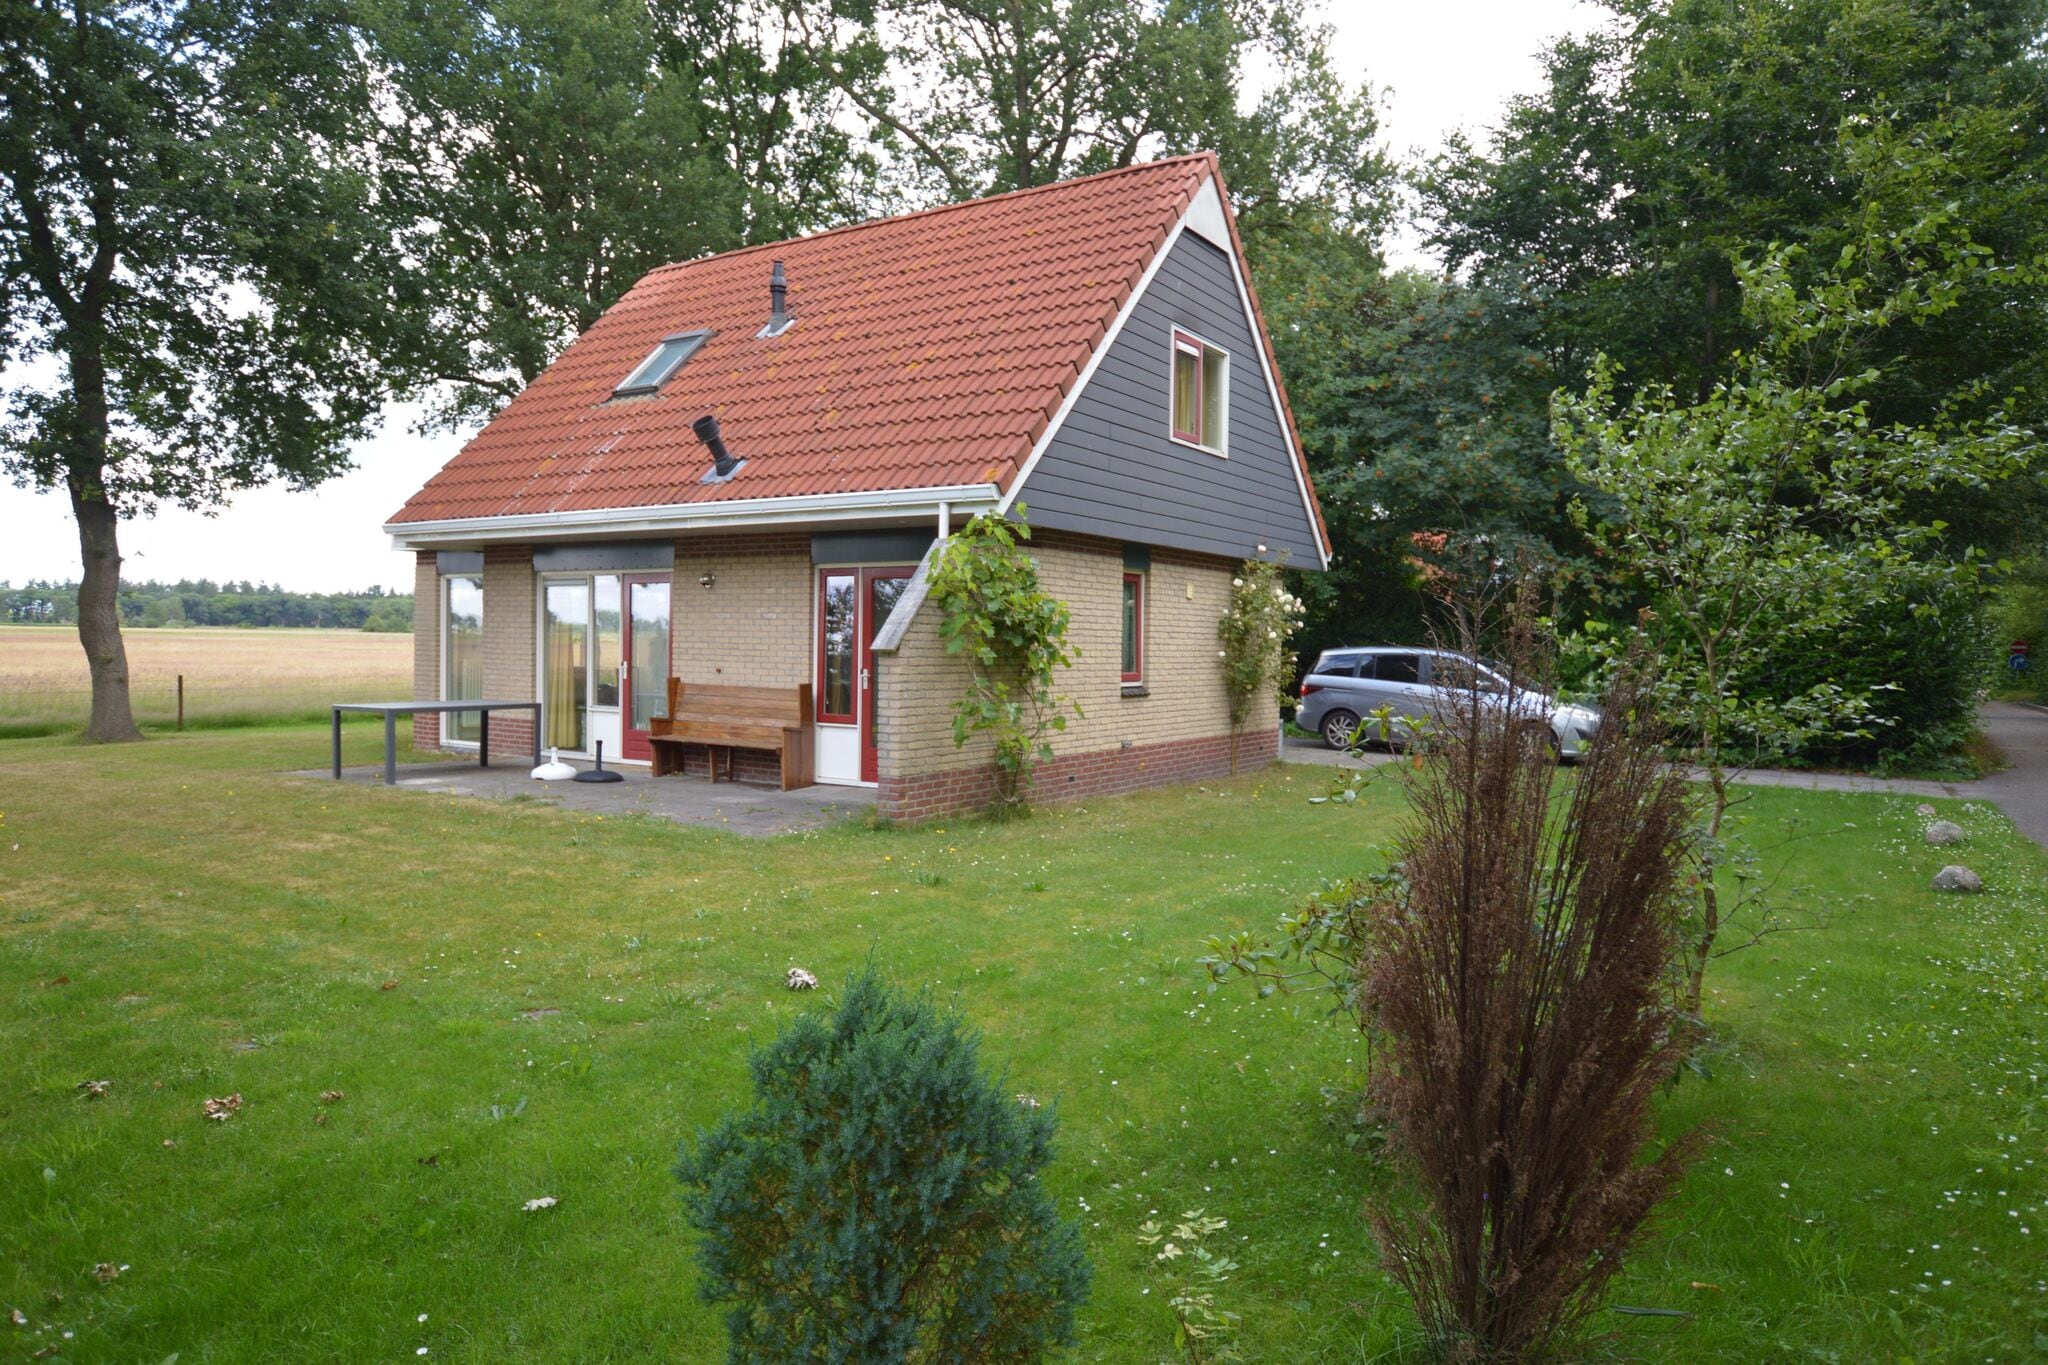 Gezellig vakantiehuis vlak bij de Lemelerberg met riante tuin